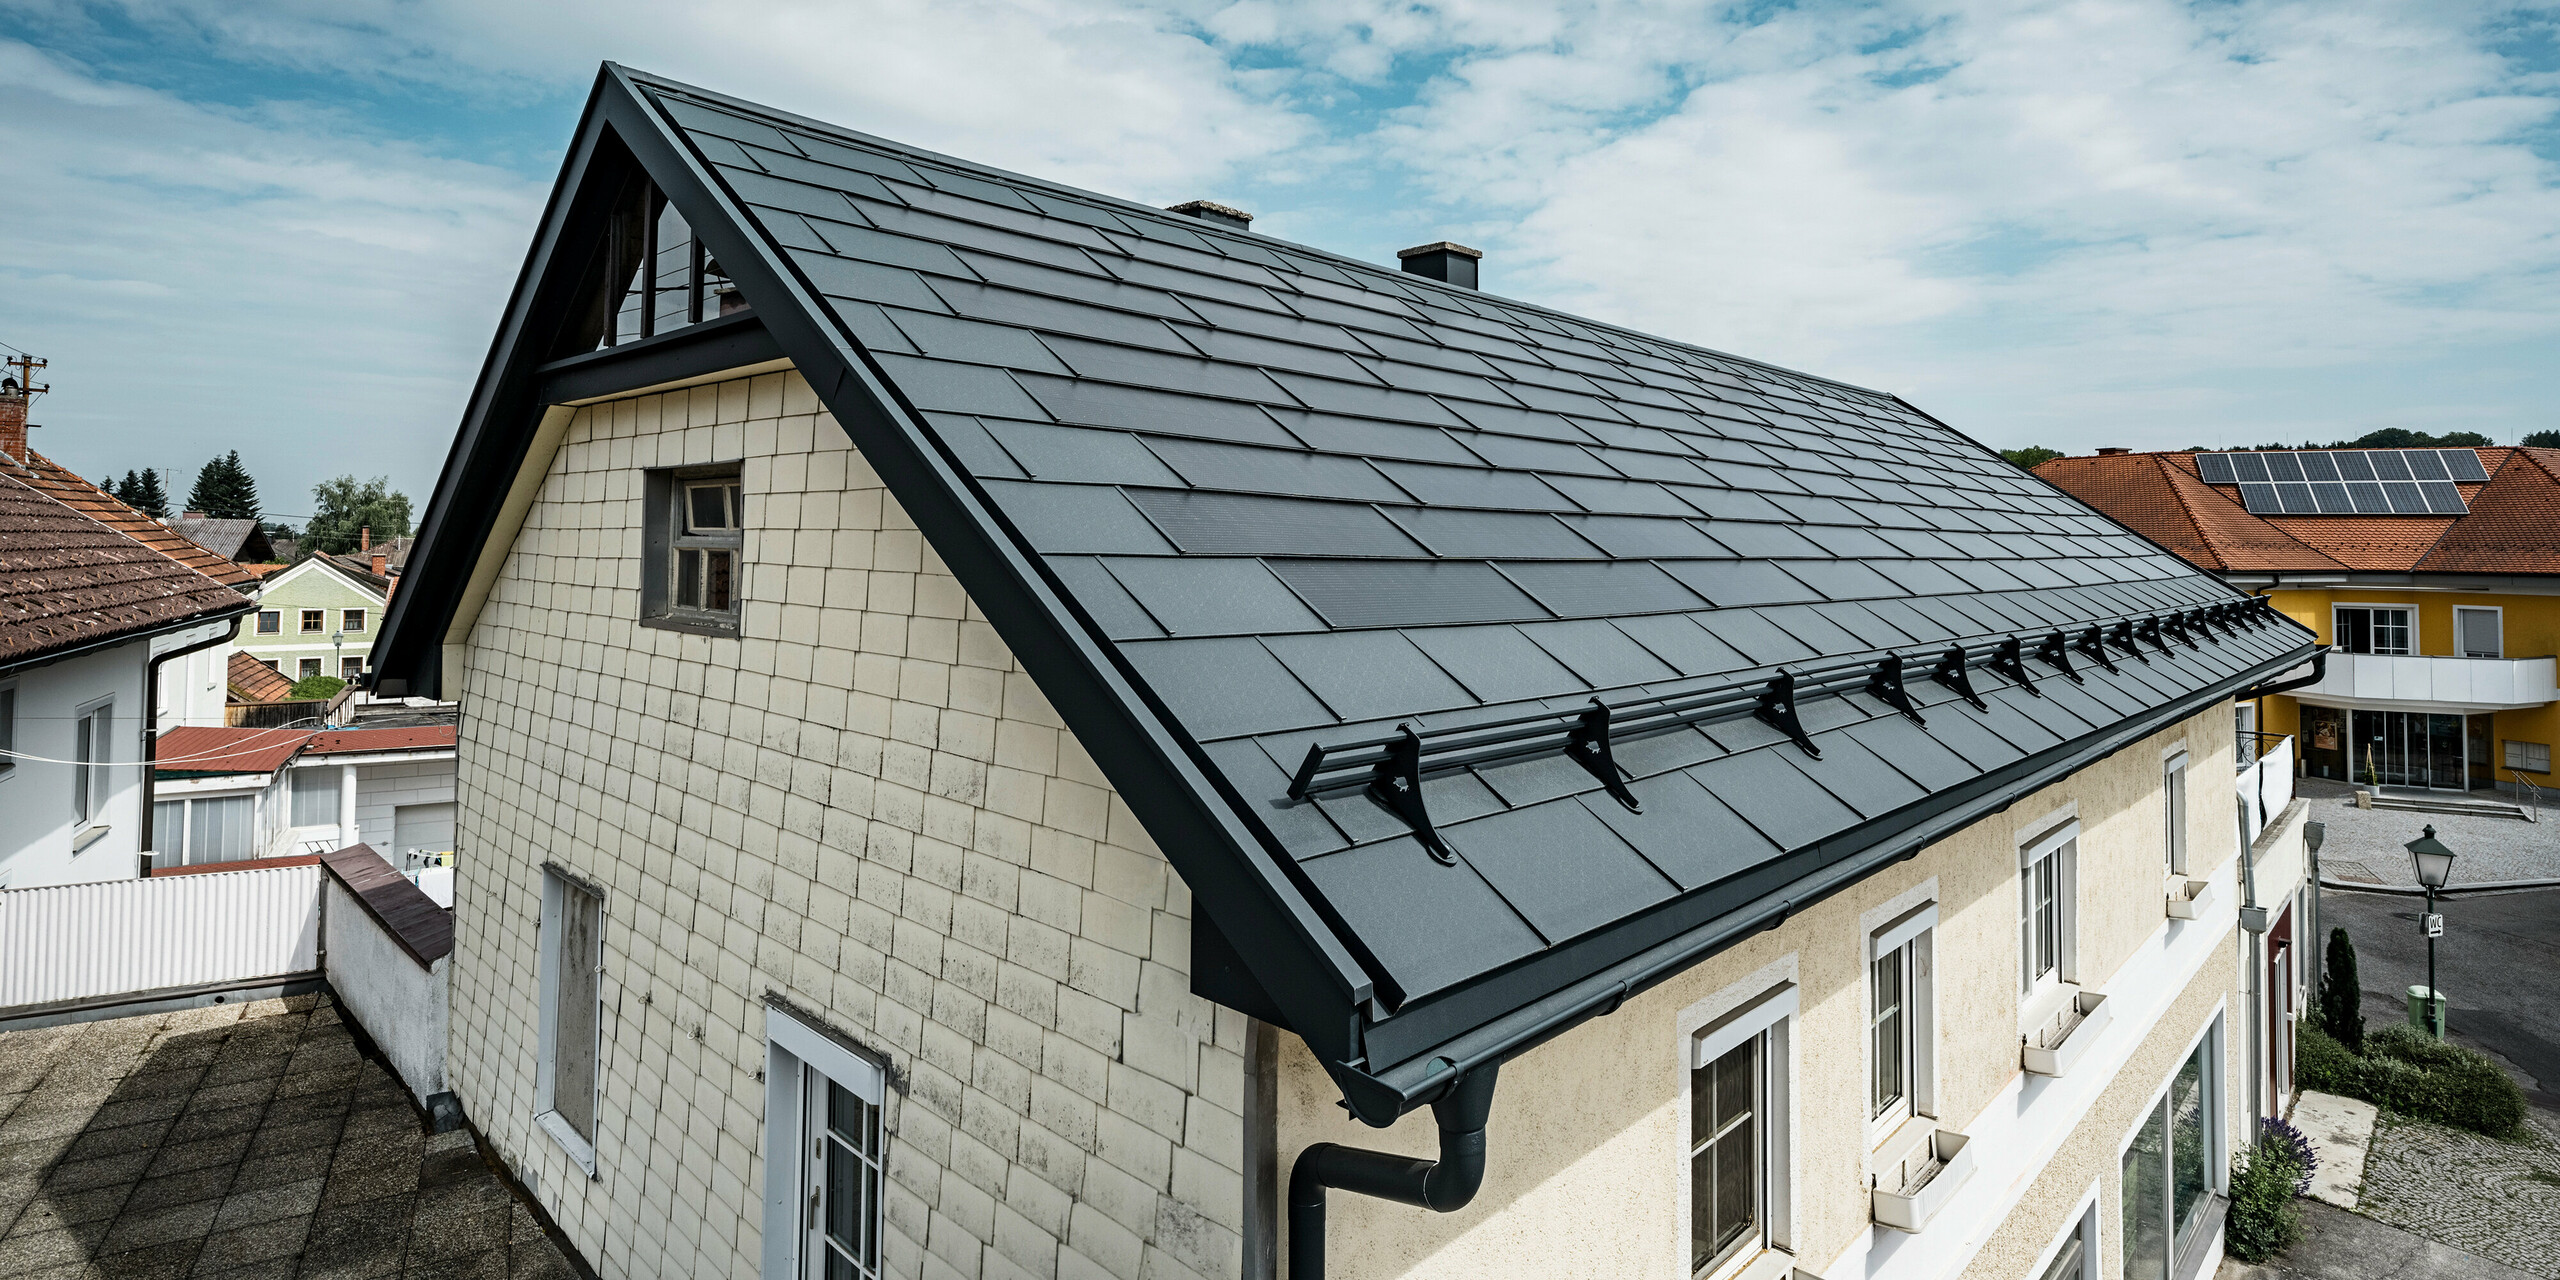 Pogled iz ptičje perspektive na streho enodružinske hiše v Mettmachu v Avstriji. Hiša je bila v okviru prenove opremljena s PREFA solarnimi strešnimi ploščami v antracitni barvi. Strukturirana površina strešnih plošč se ujema s preprosto eleganco hiše. Na rob strehe je pritrjen sistem snegobrana. V ozadju so vidne druge hiše s tradicionalnimi in solarnimi strešnimi rešitvami, kar poudarja sodobno, energetsko učinkovito zasnovo strehe v podeželskem okolju.